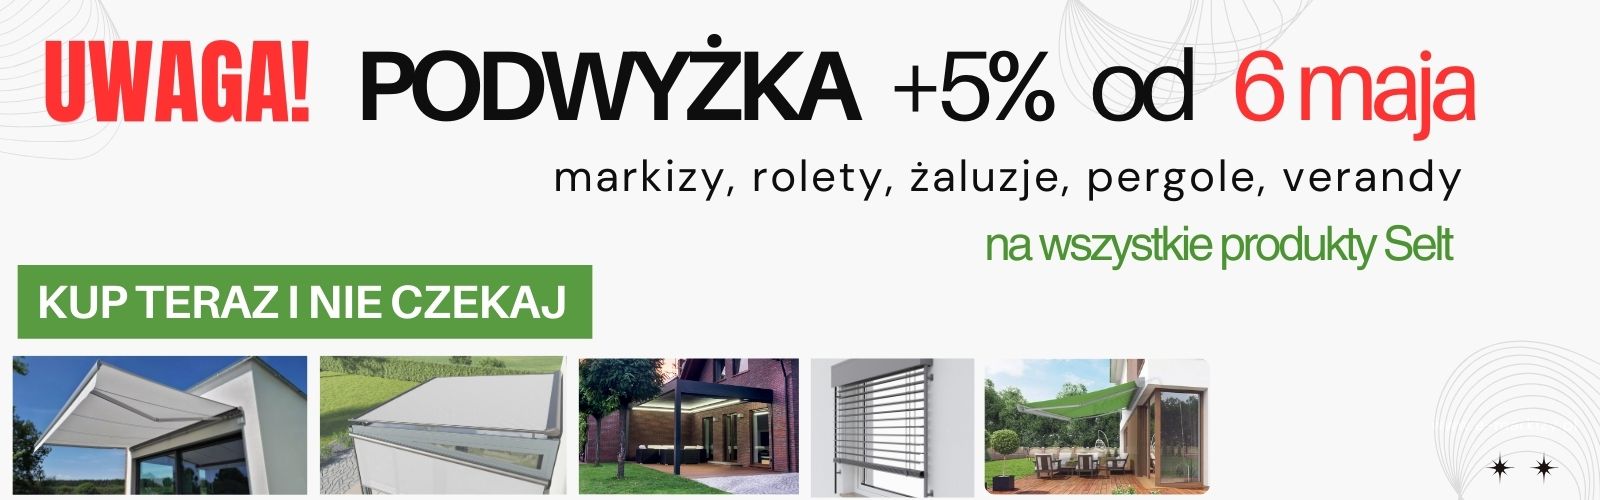 Uwaga! Podwyżka +5% od 6 maja na markizy rolety żaluzje pergole verandy SELT